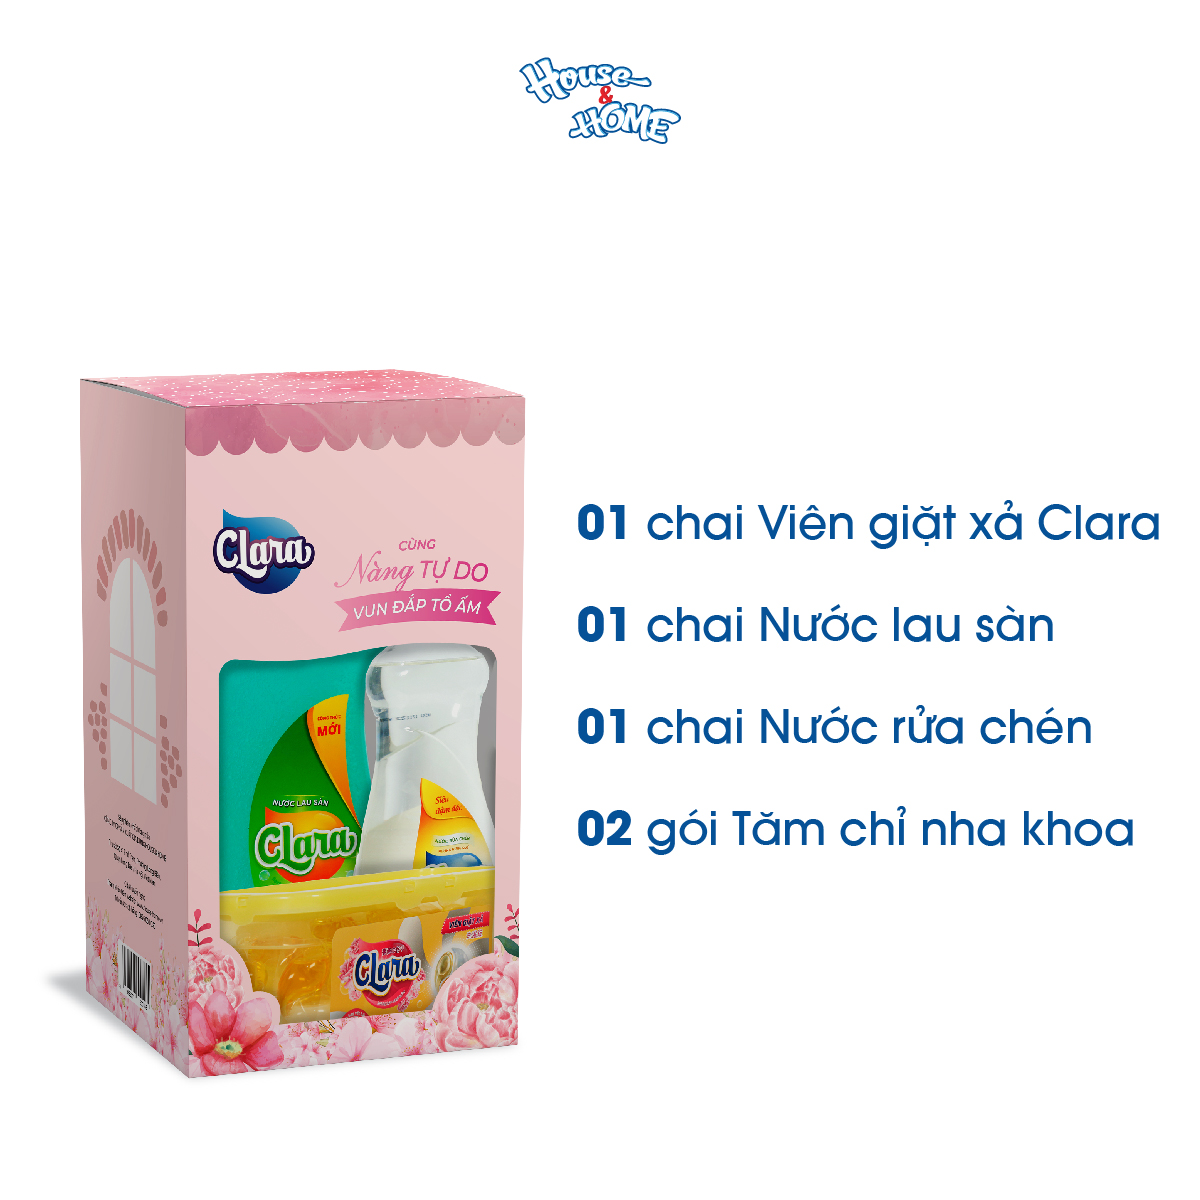 Bộ sản phẩm Clara GiftBox giặt xả, lau sàn, rửa chén, tăm chỉ phù hợp mọi gia đình